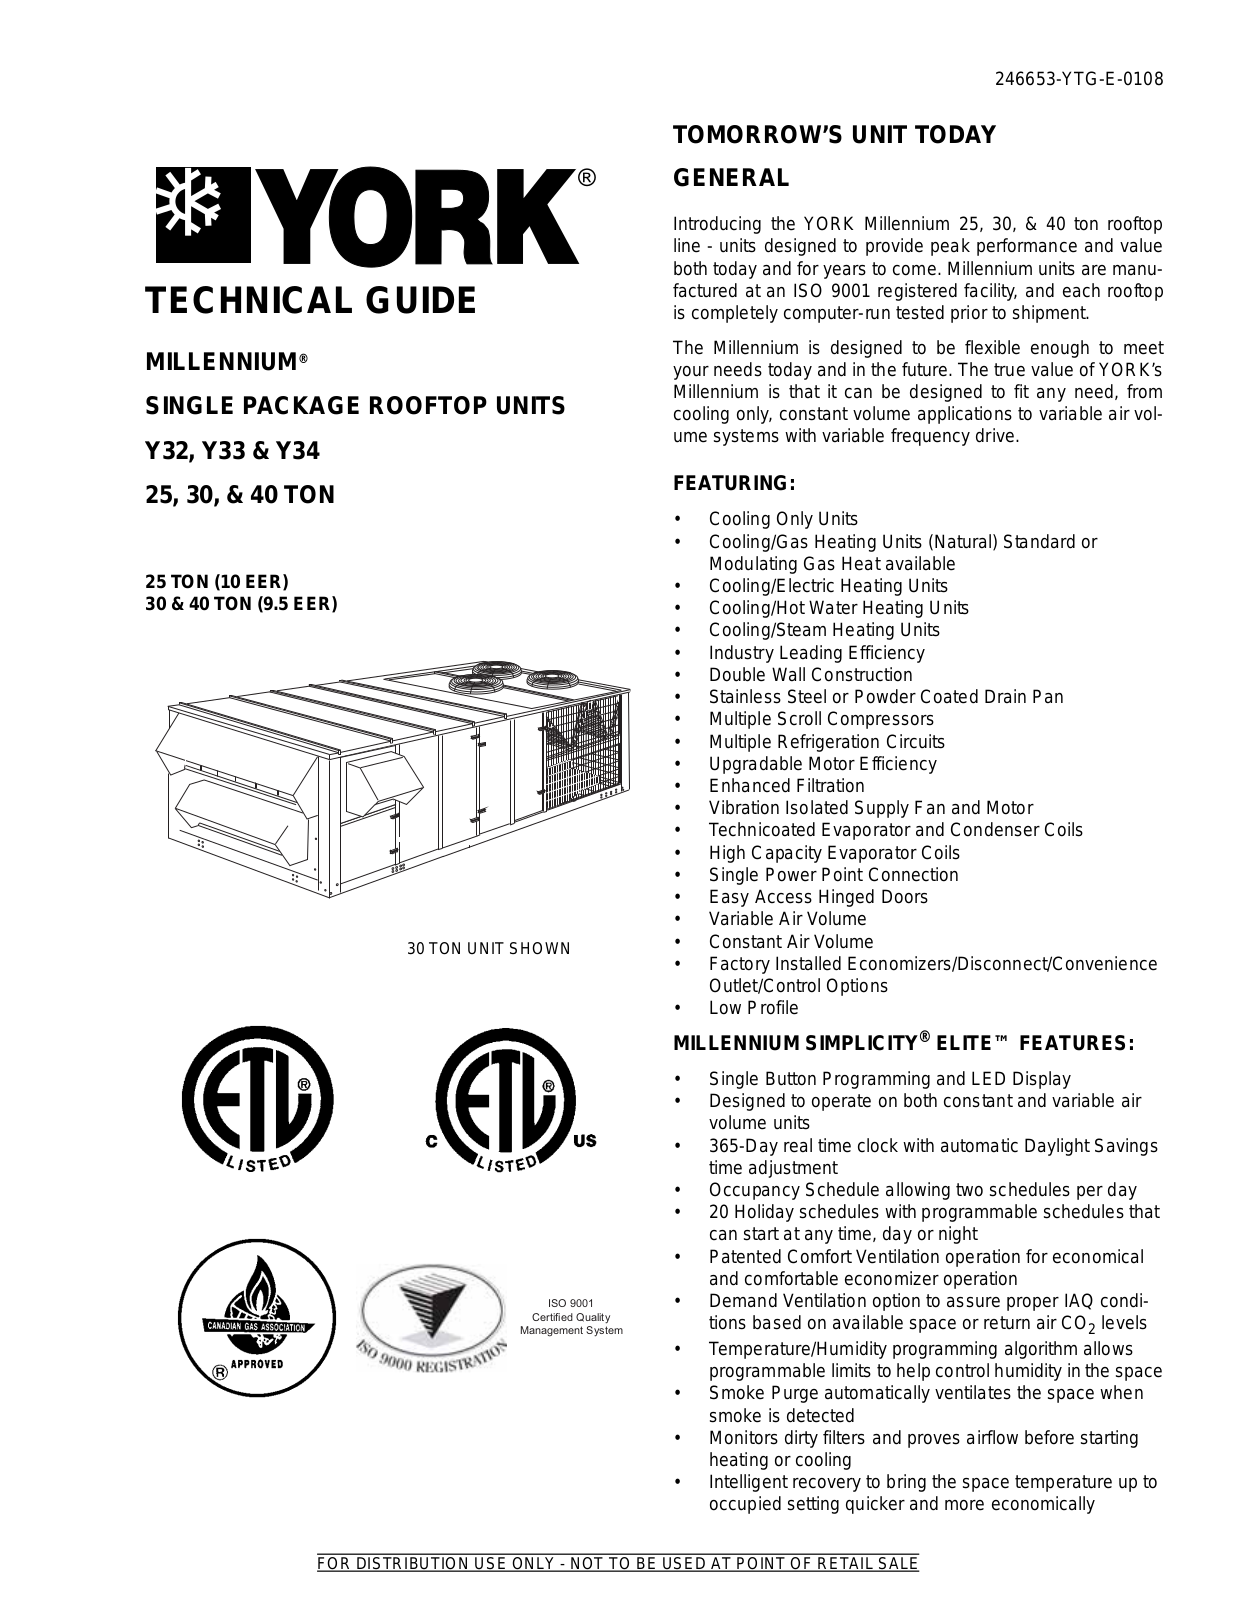 York Y32, Y34, Y33 User Manual